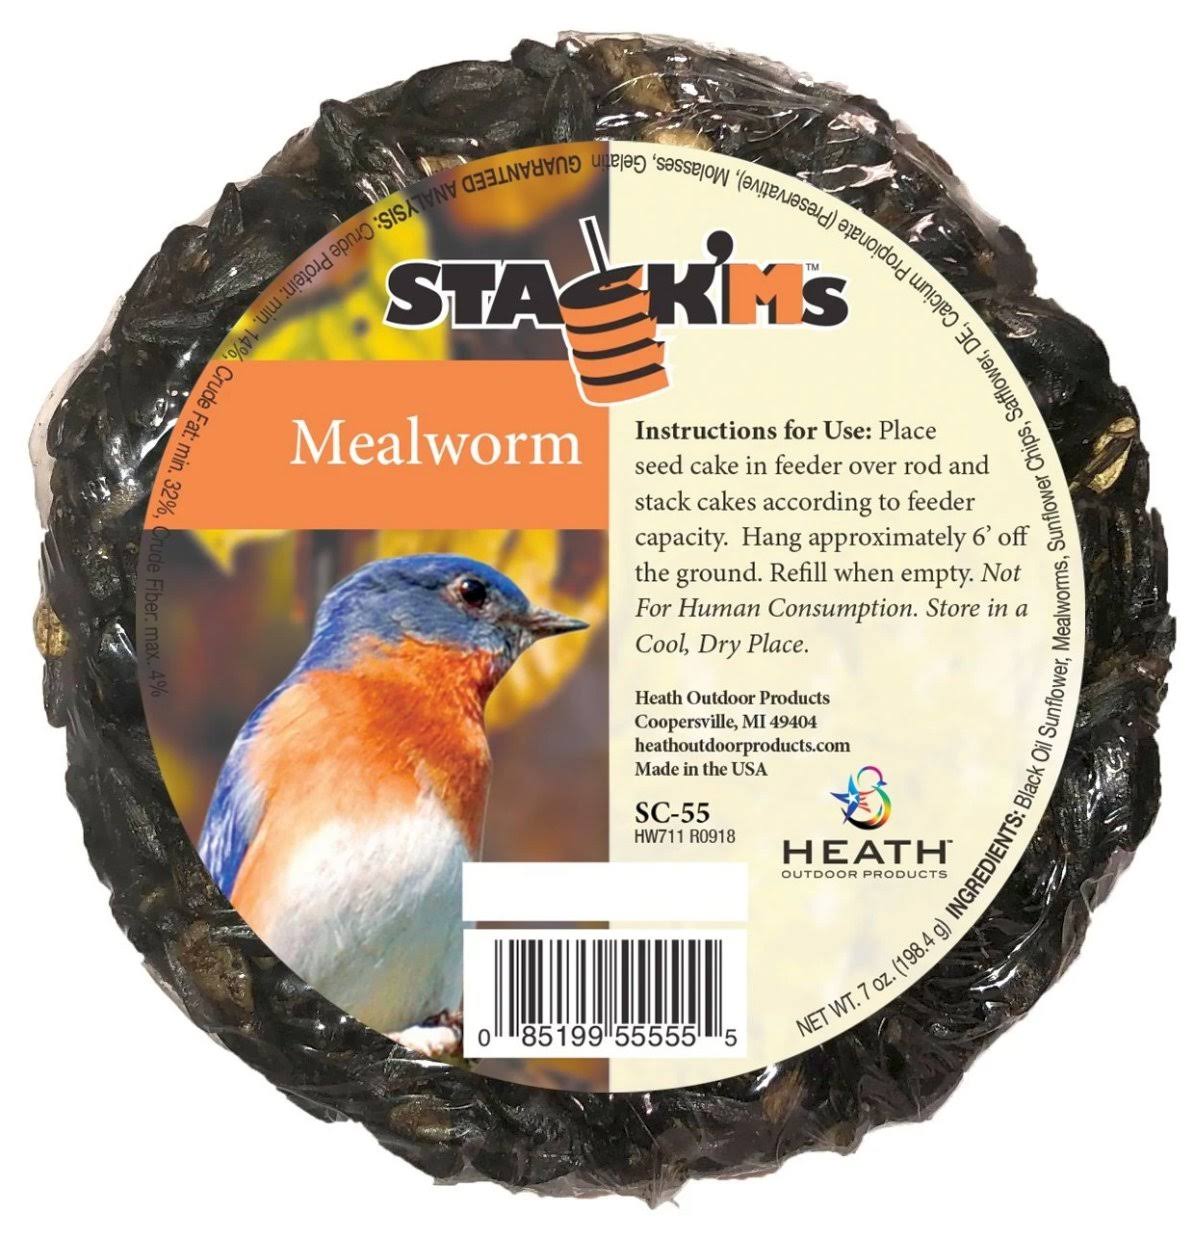 6 Heath Heathsc55 Seed Mealworm Stack'm Seed Cakes ($3.84 @ 6 min)